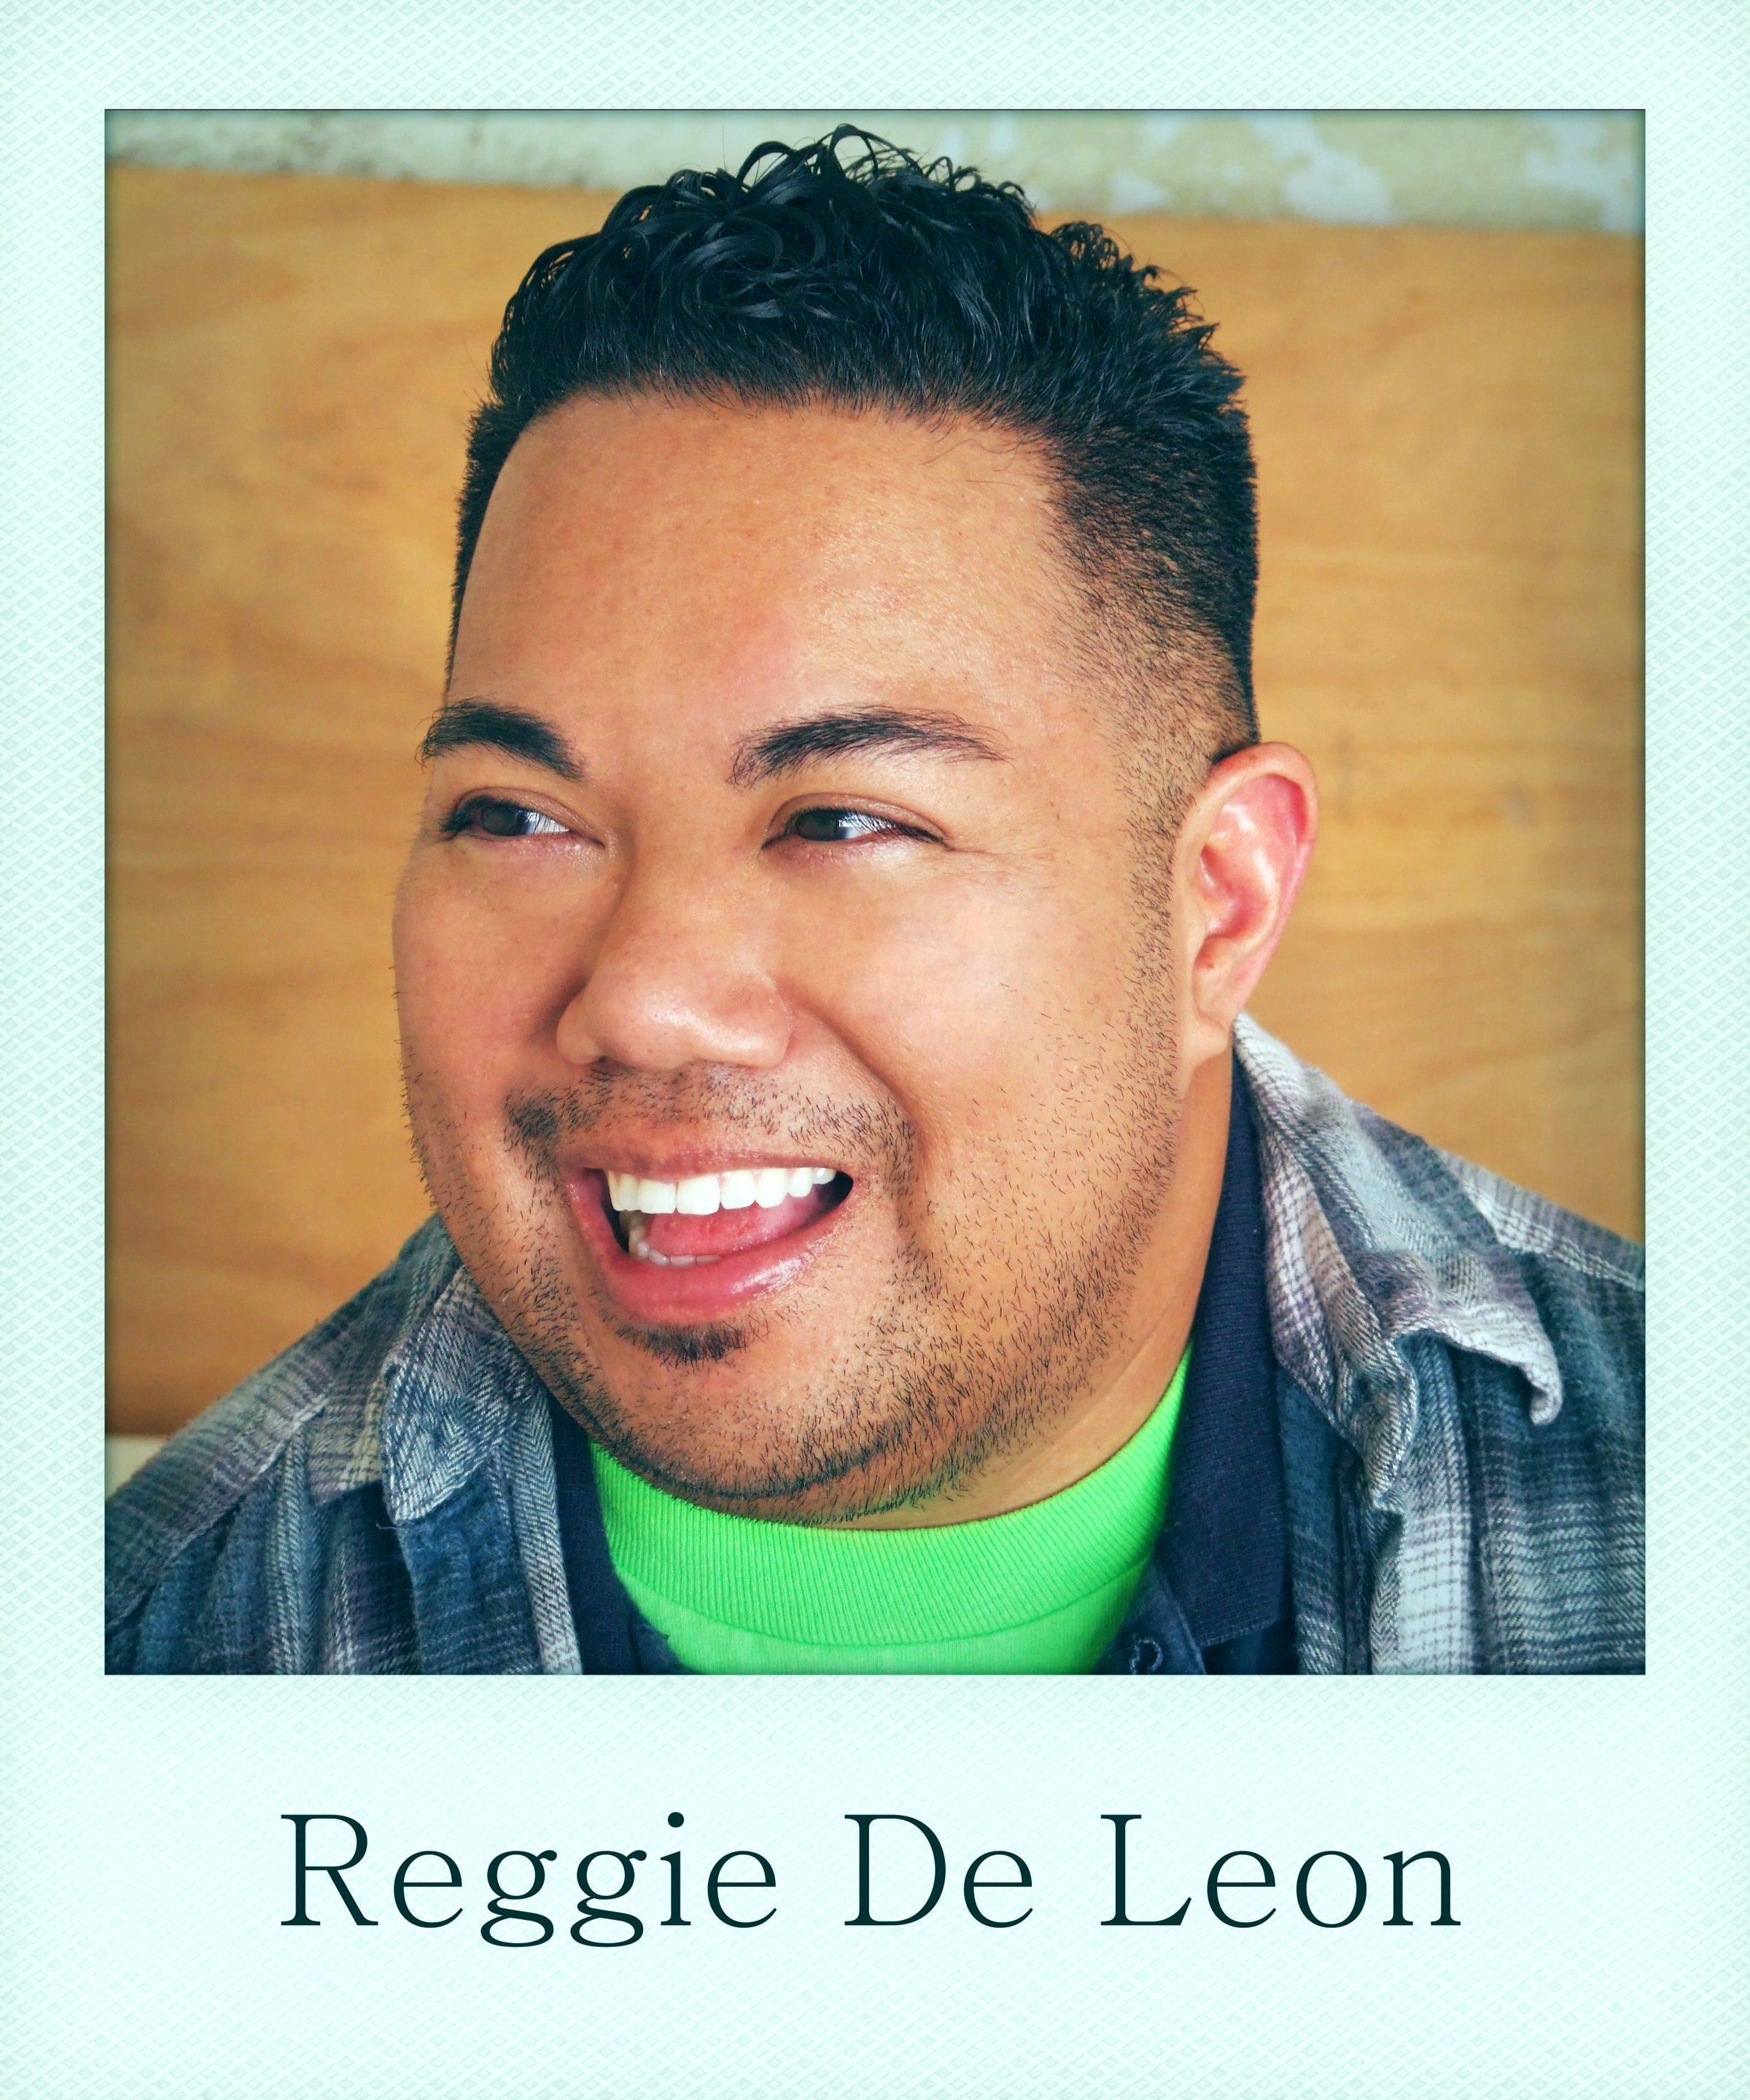 Reggie De Leon